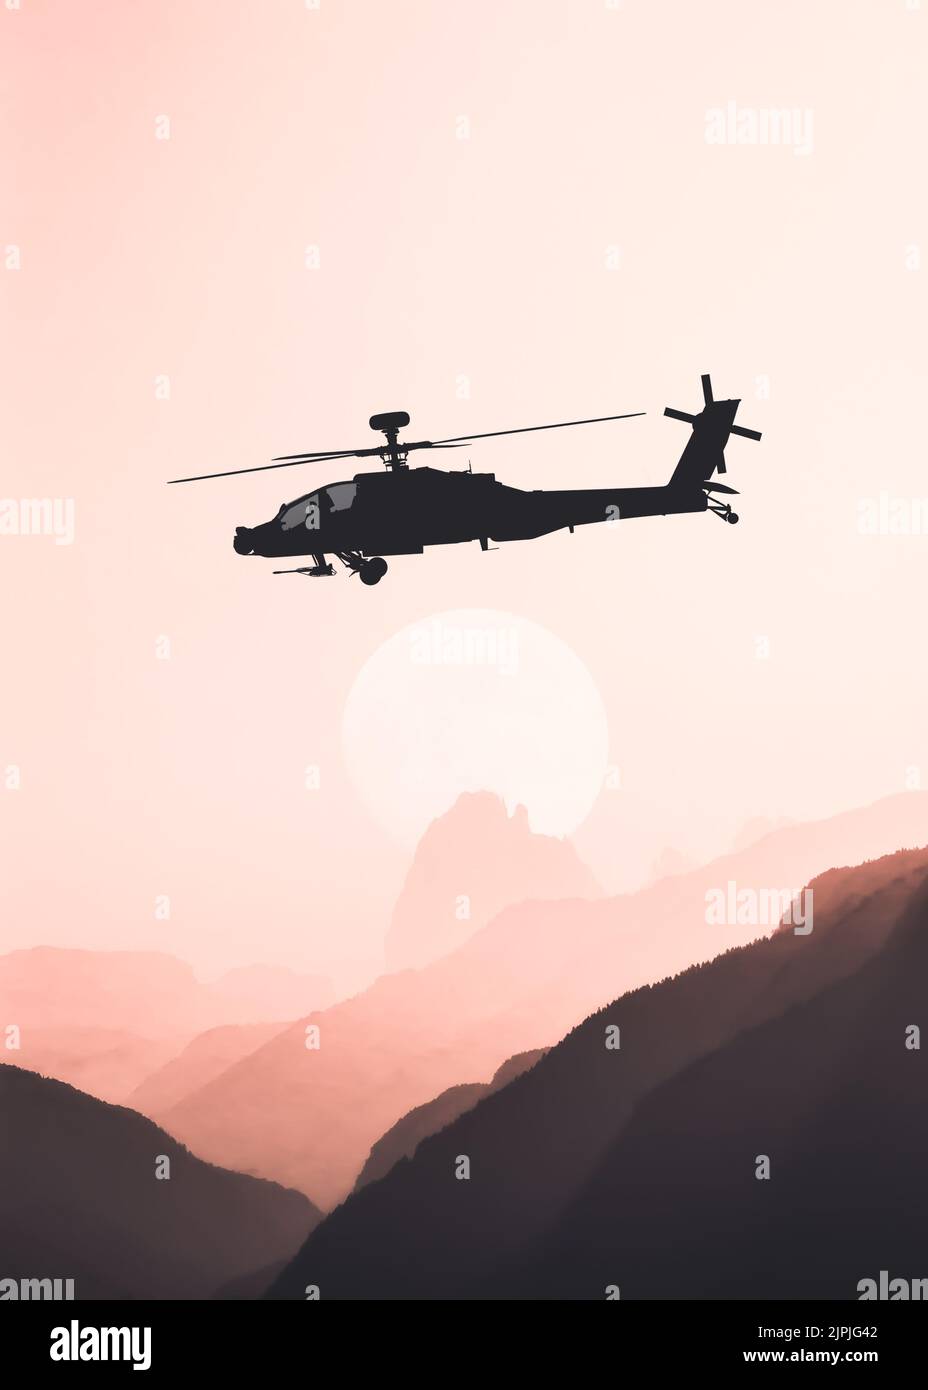 helicóptero, kampfhubschrauber, boeing ah-64, militäreinsatz, dystopie, helicópteros Foto de stock